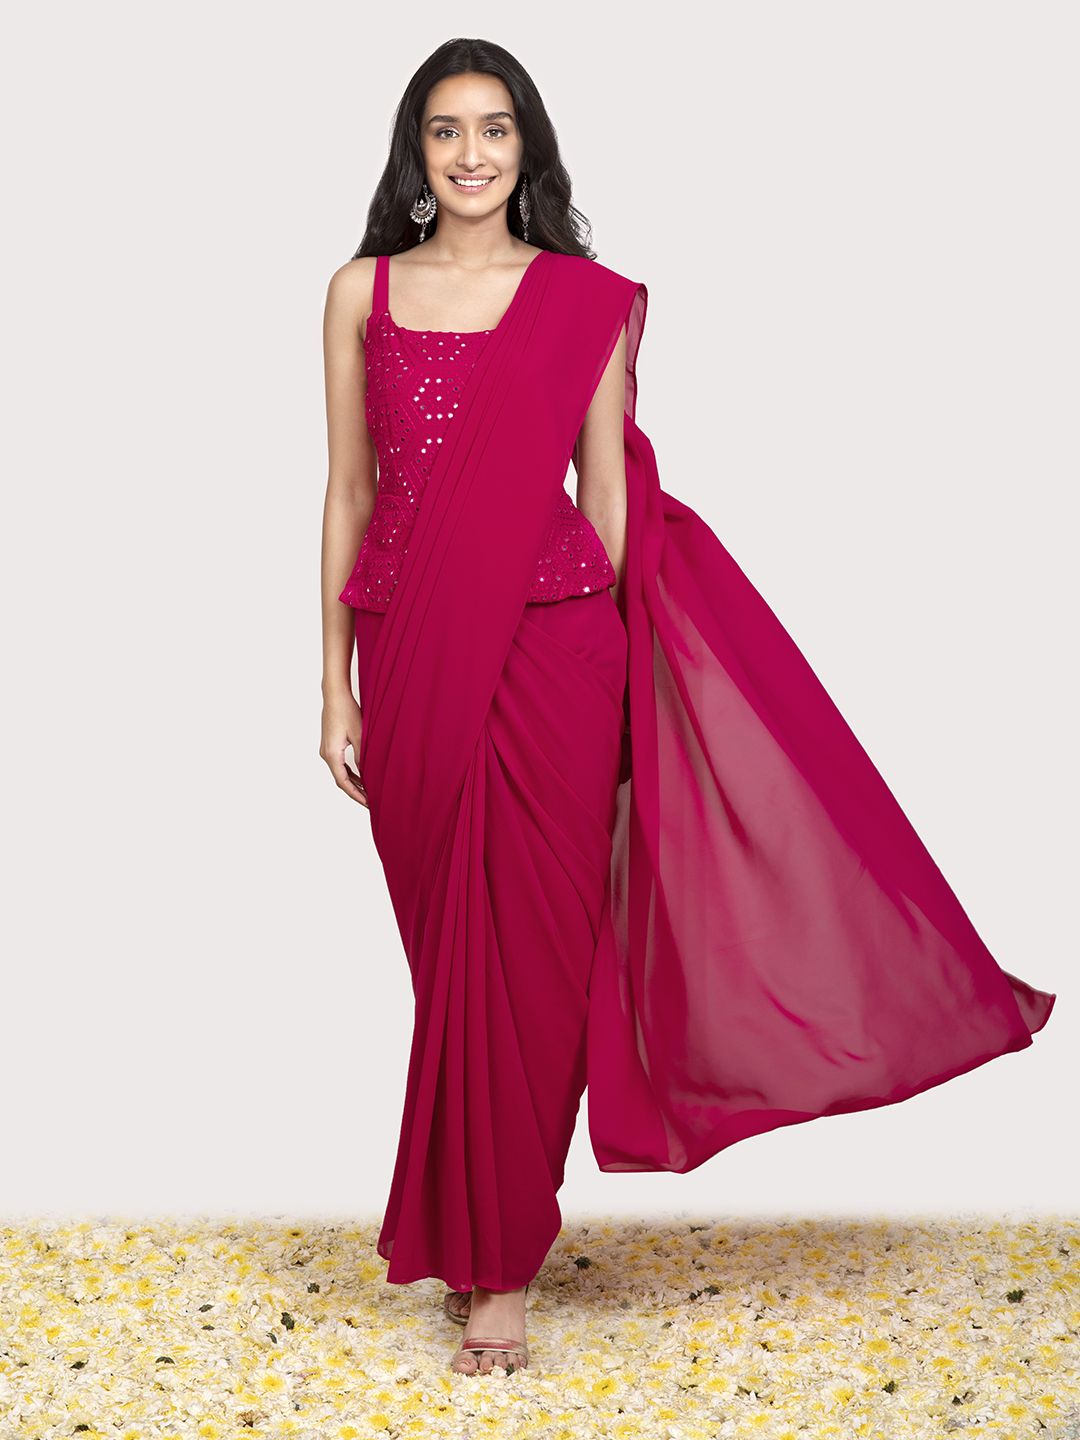 INDYA X Shraddha Kapoor Pink & White Mirror Embroidered Peplum Sari Tunic Price in India